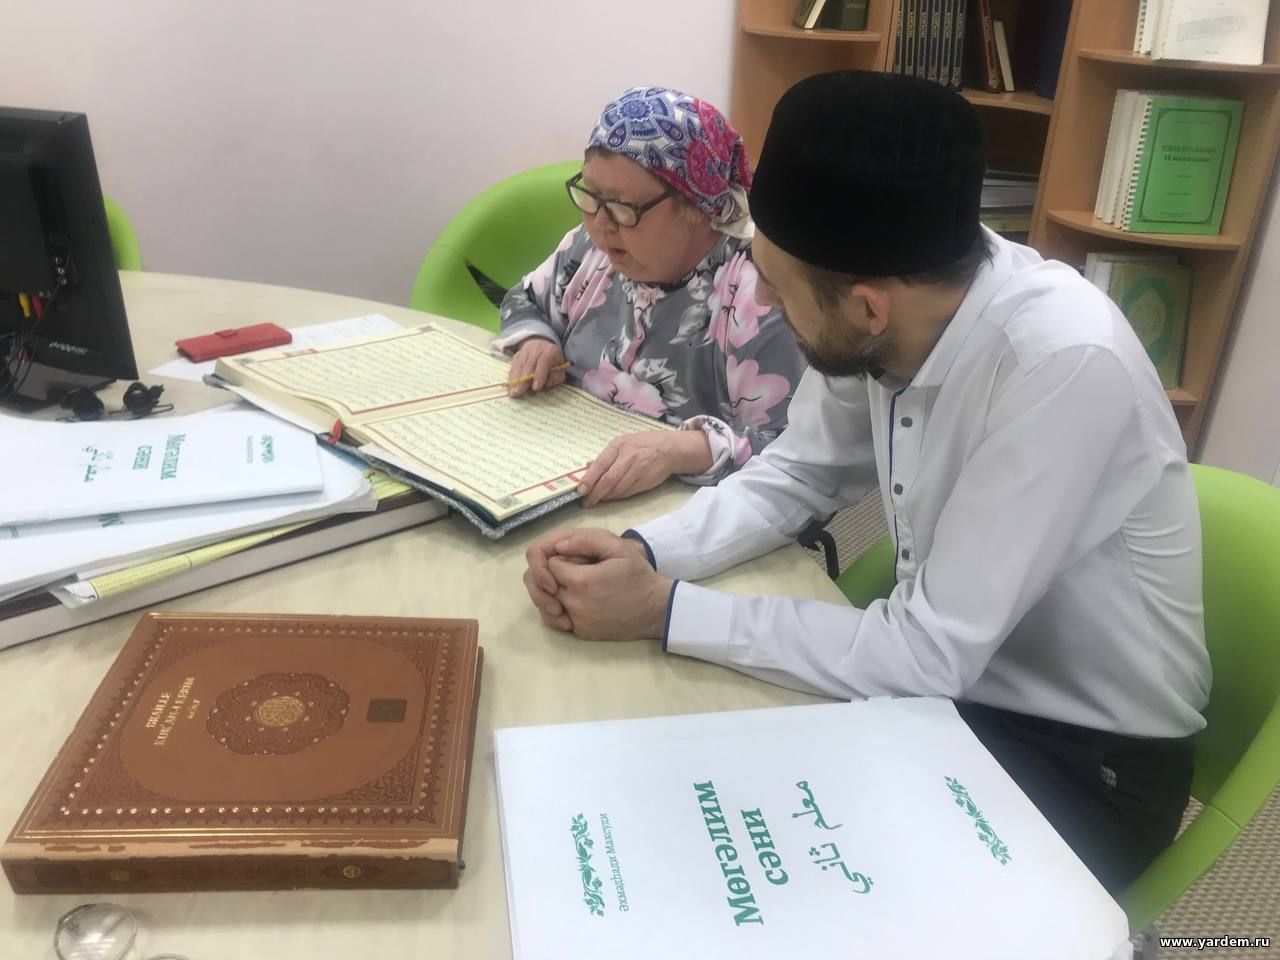 Обучение чтению Корана на плоской печати. Общие новости